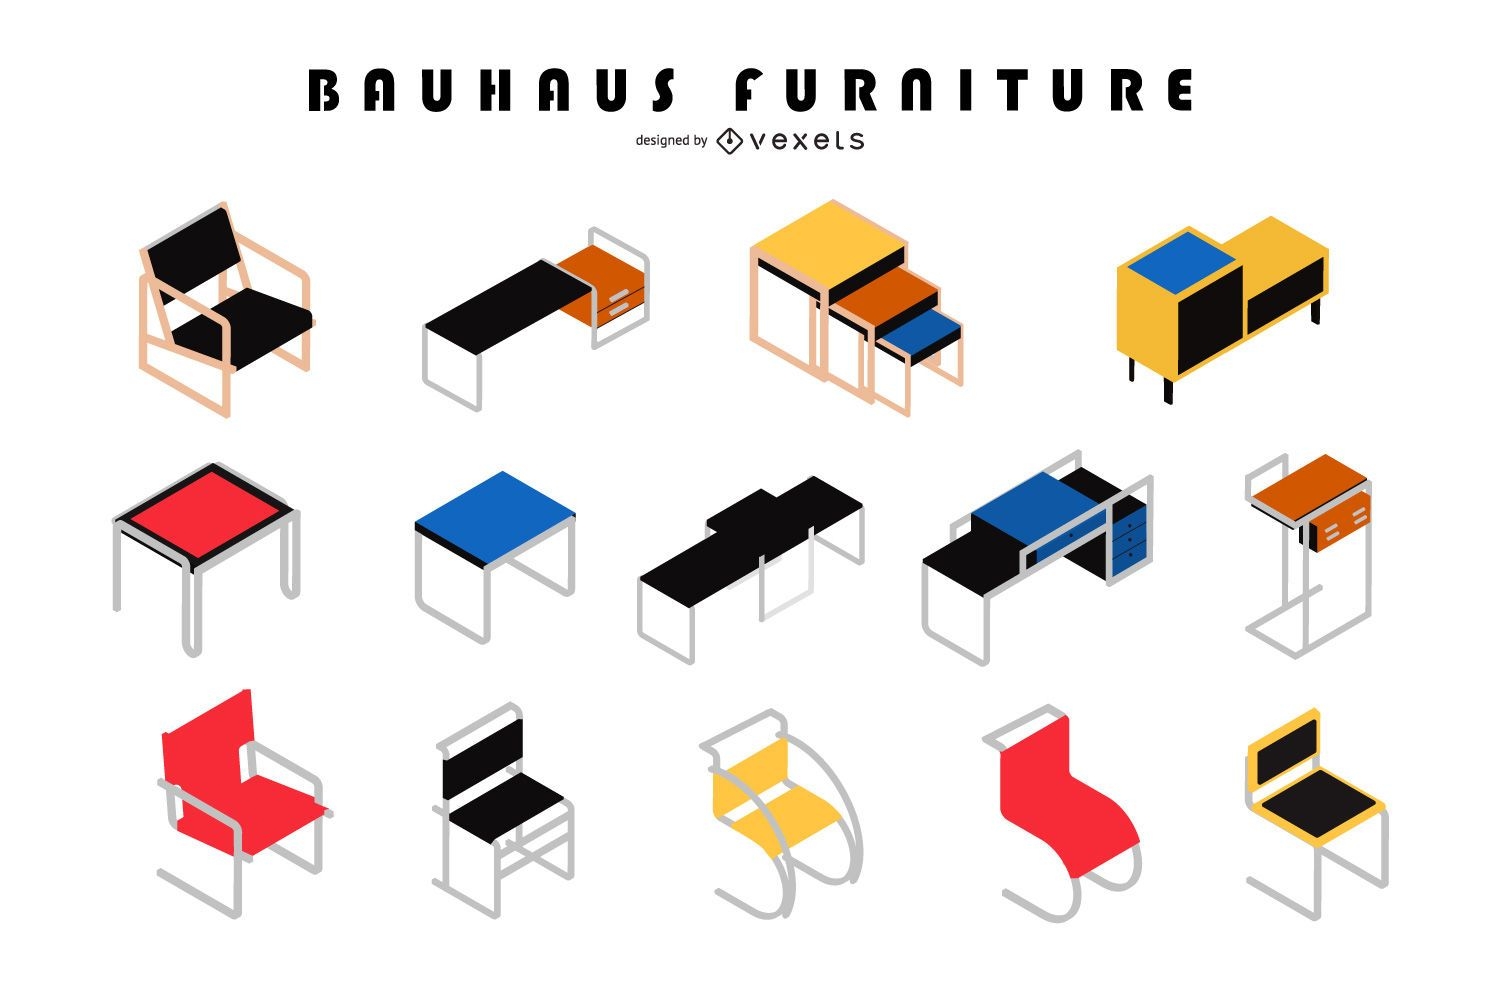 Conjunto de dise?o isom?trico de muebles Bauhaus